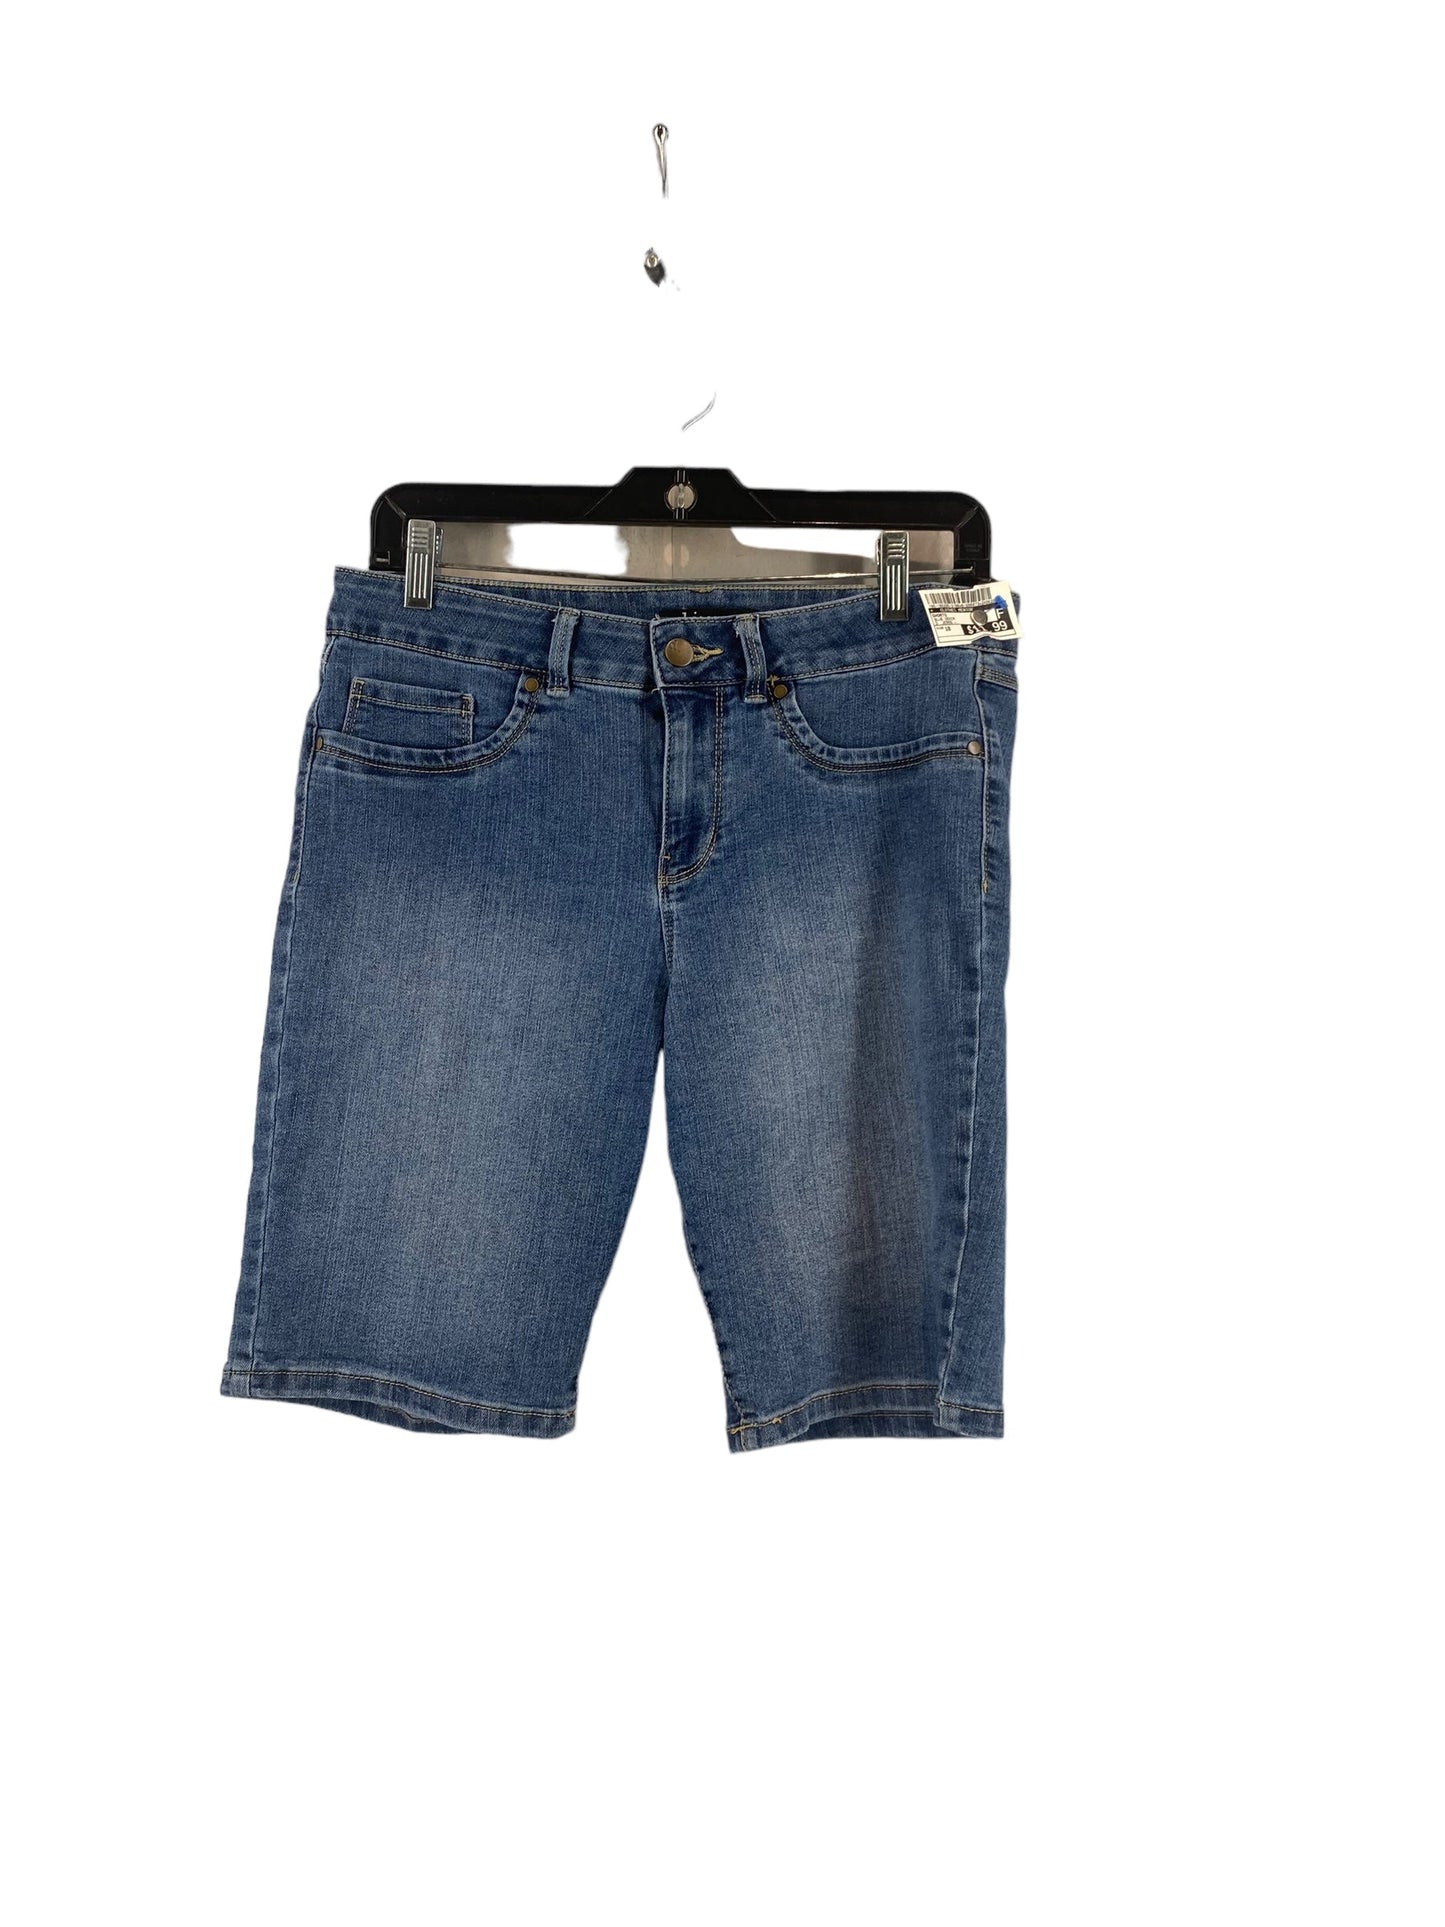 Blue Denim Shorts Clothes Mentor, Size 10